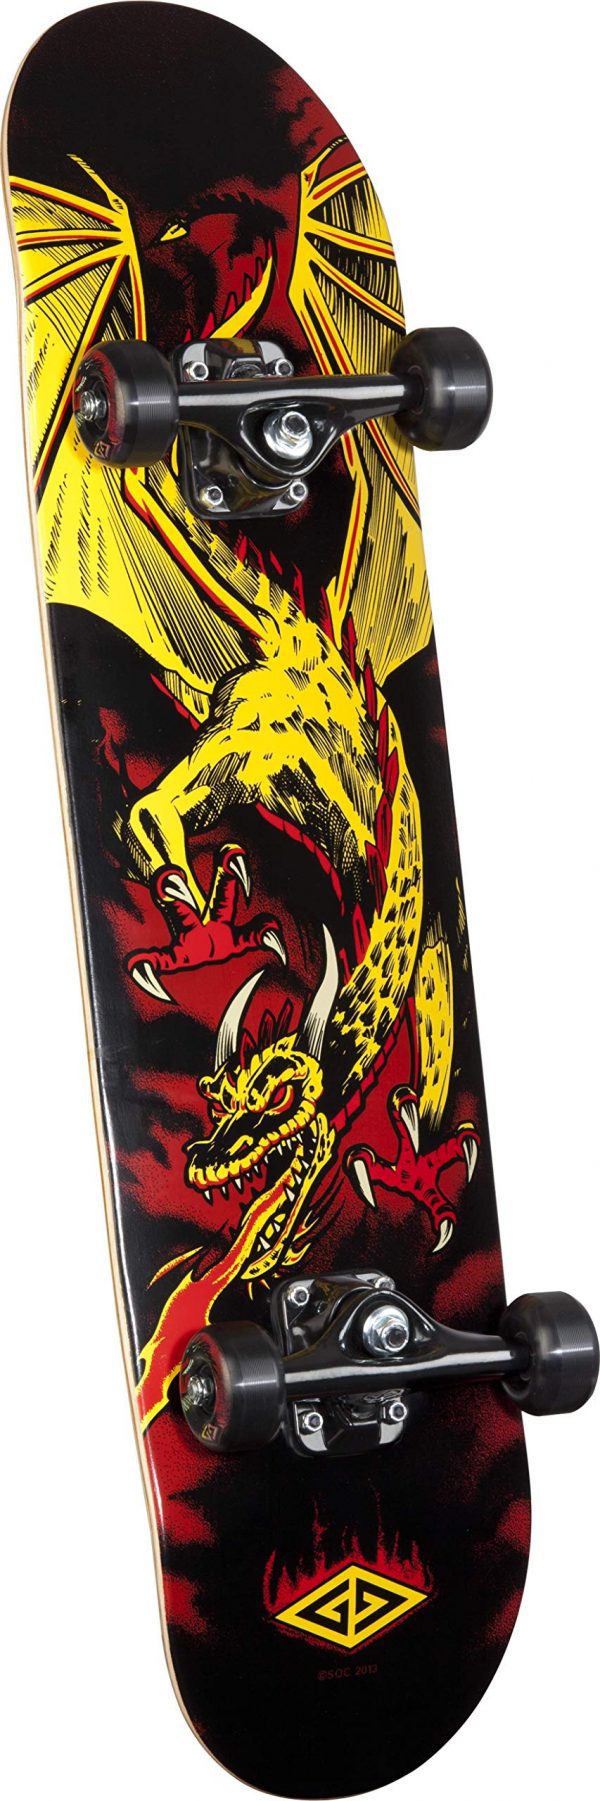 Powell Golden Dragon Flying Skateboard